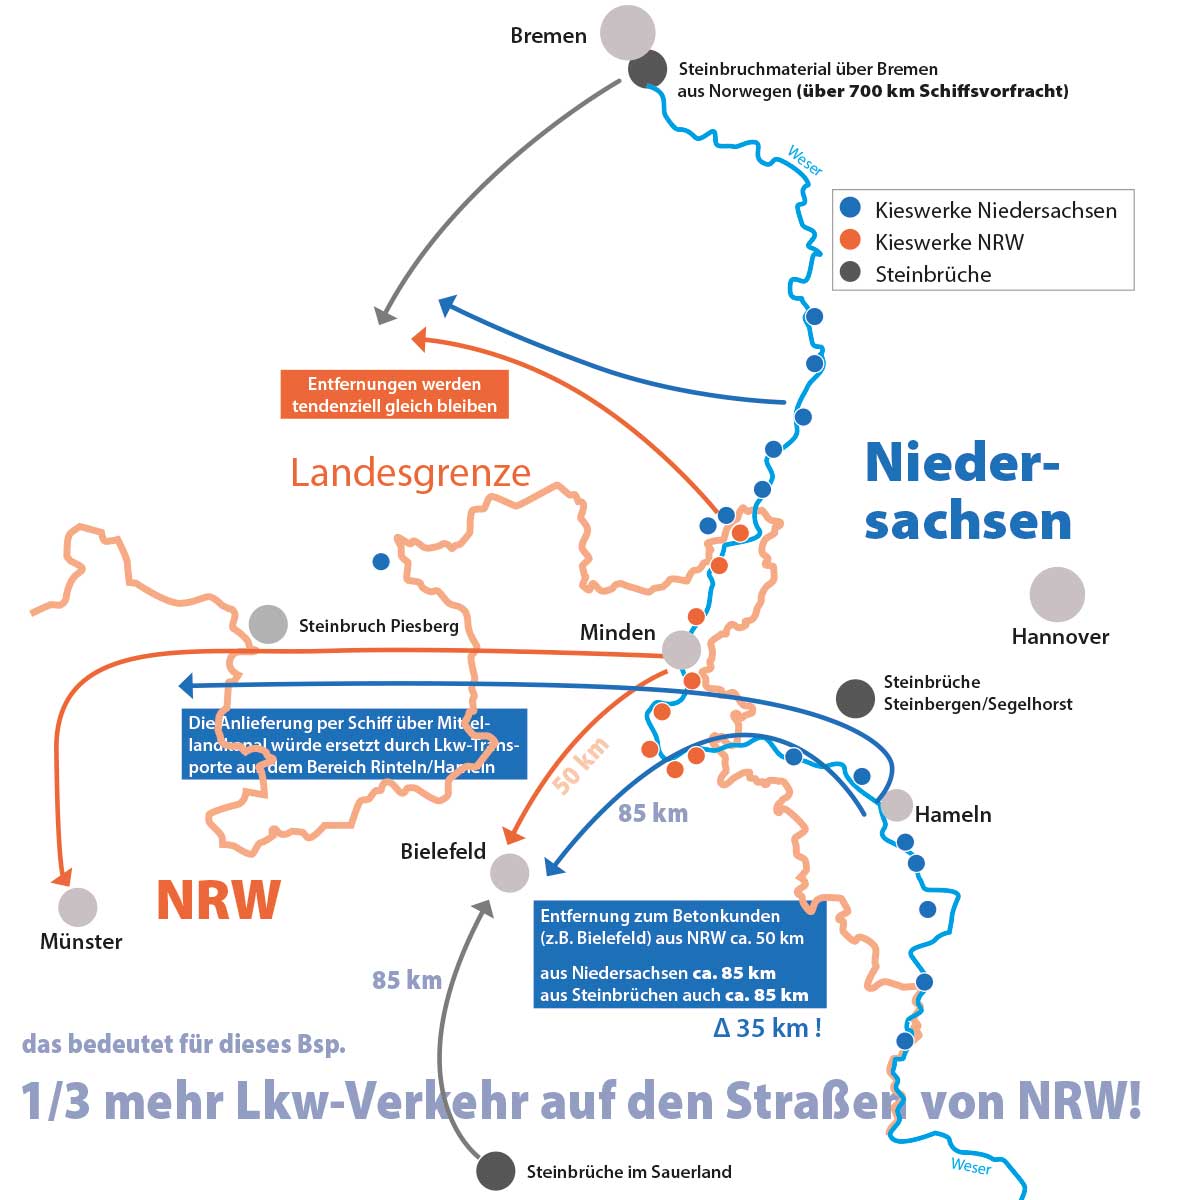 Die Folgen der Rohstoffabgabe sind längere Transportwege und mehr Lkw-Verkehr auf den Straßen von NRW.